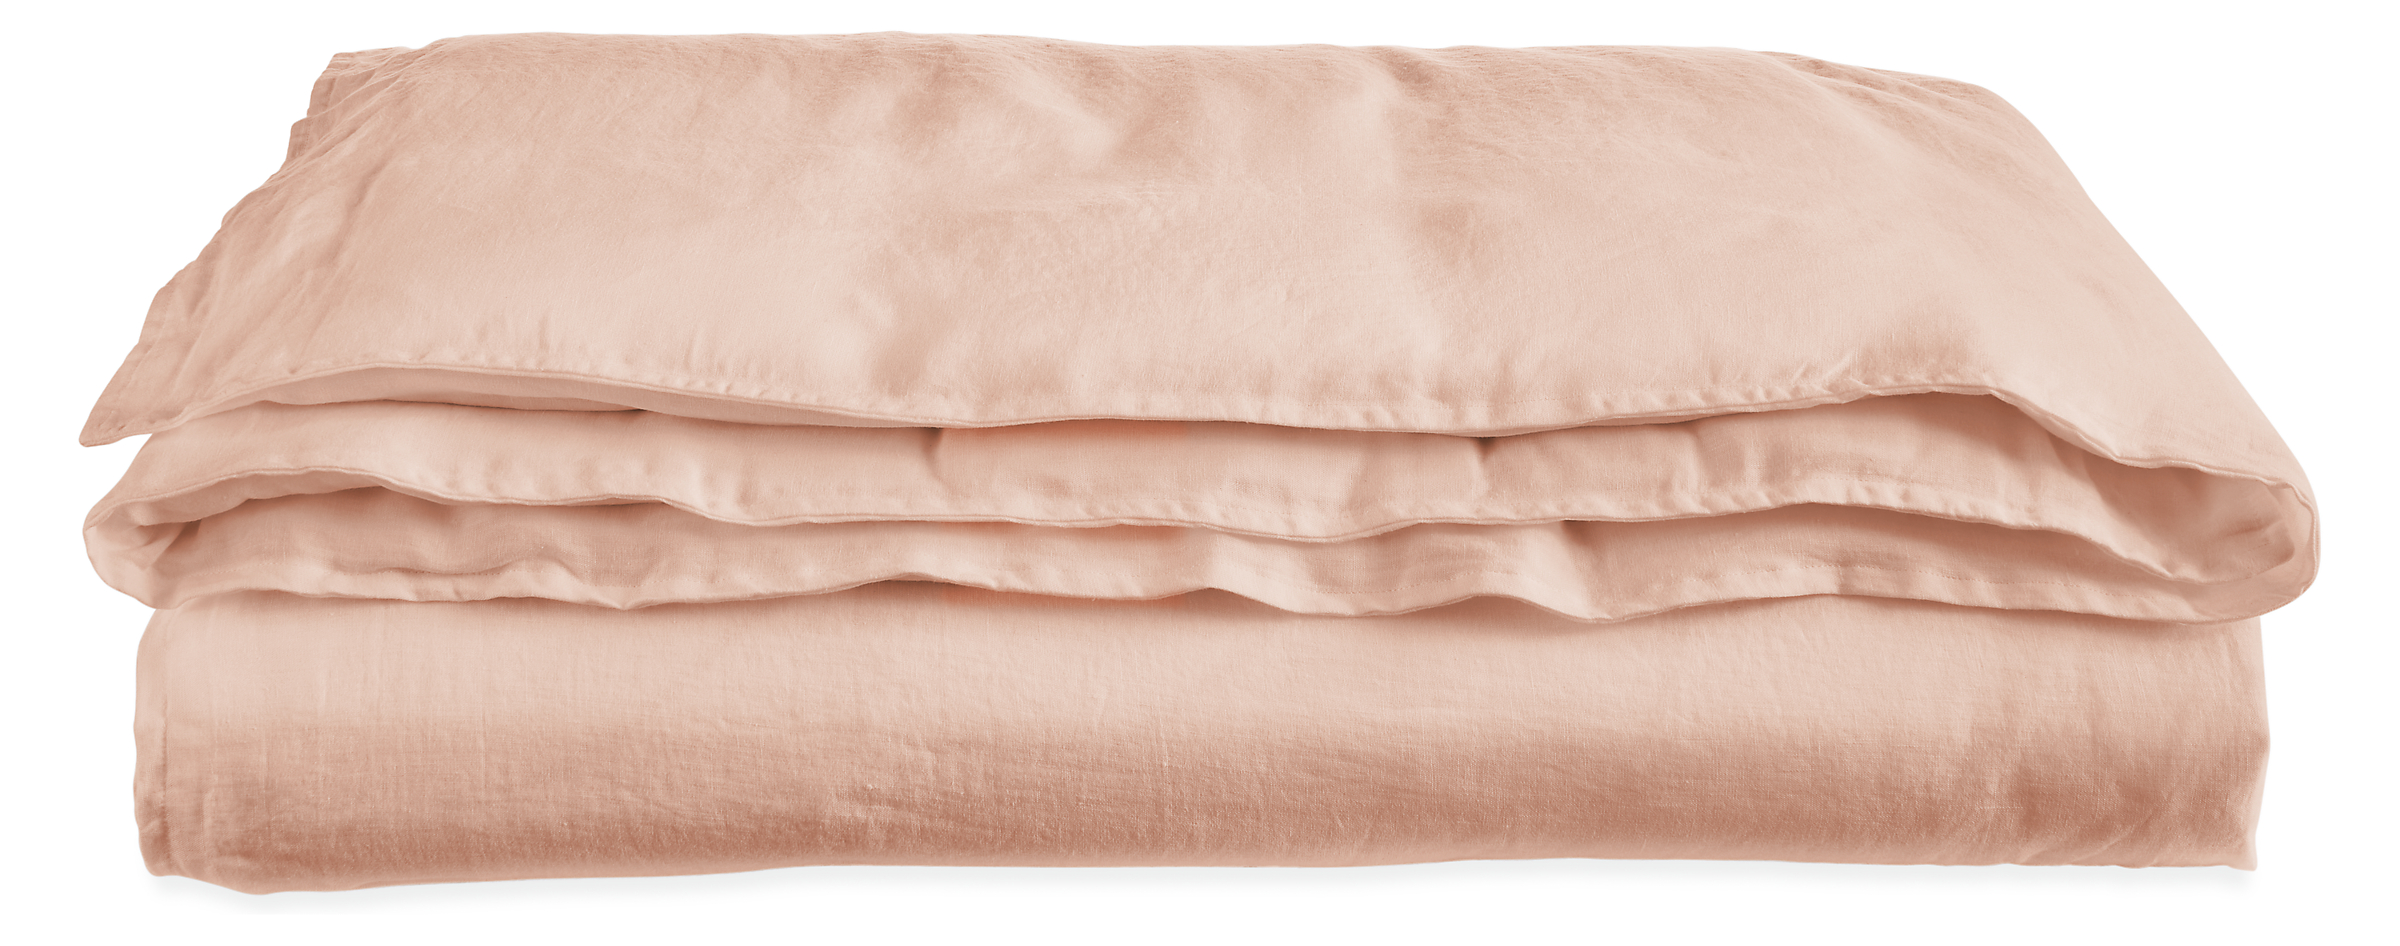 Relaxed Linen Full/Queen Duvet Cover